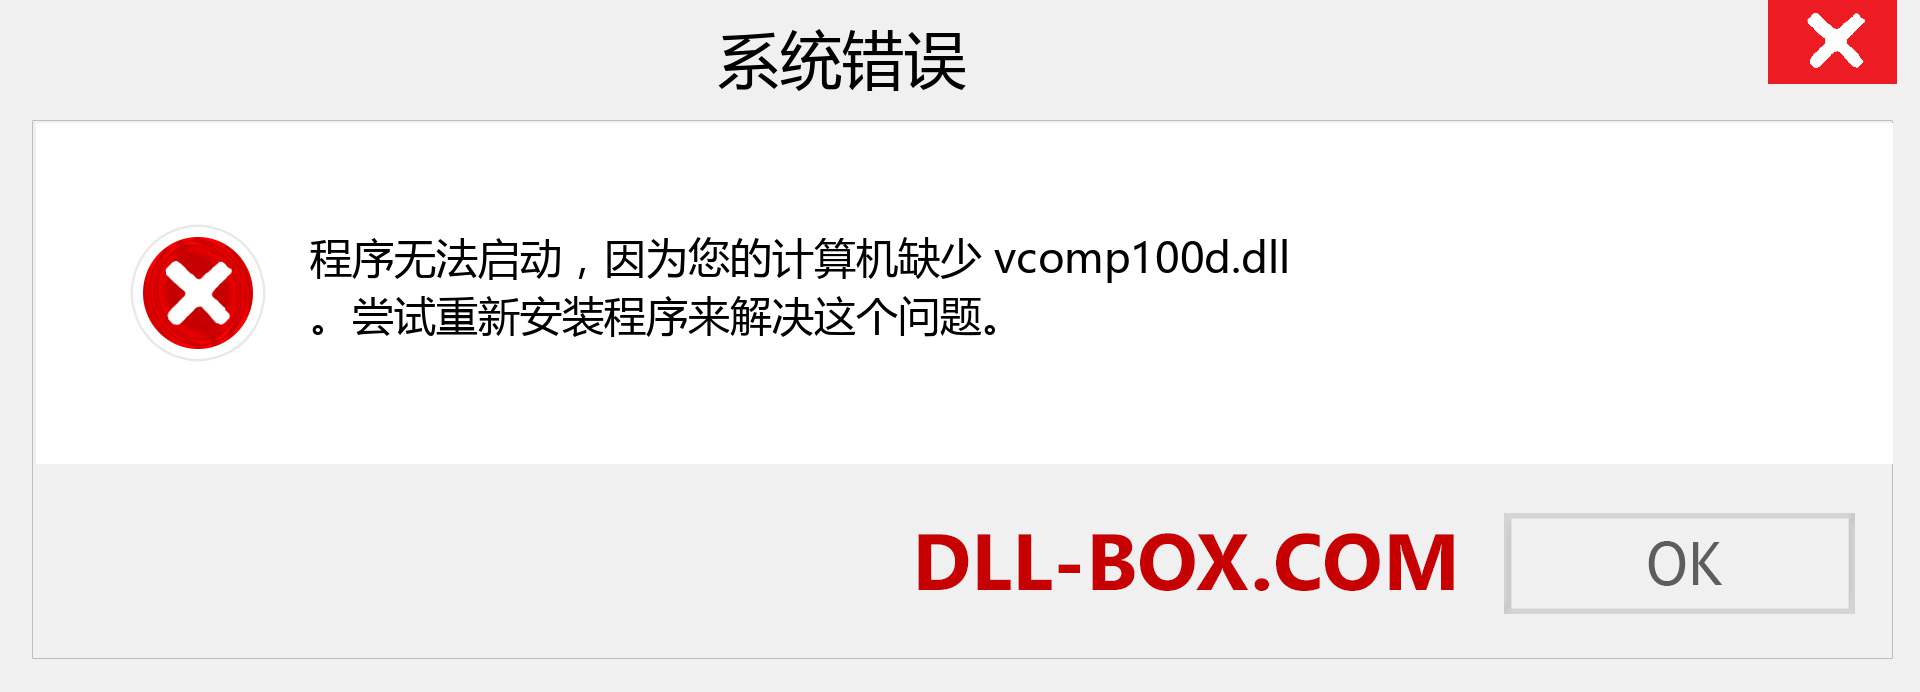 vcomp100d.dll 文件丢失？。 适用于 Windows 7、8、10 的下载 - 修复 Windows、照片、图像上的 vcomp100d dll 丢失错误